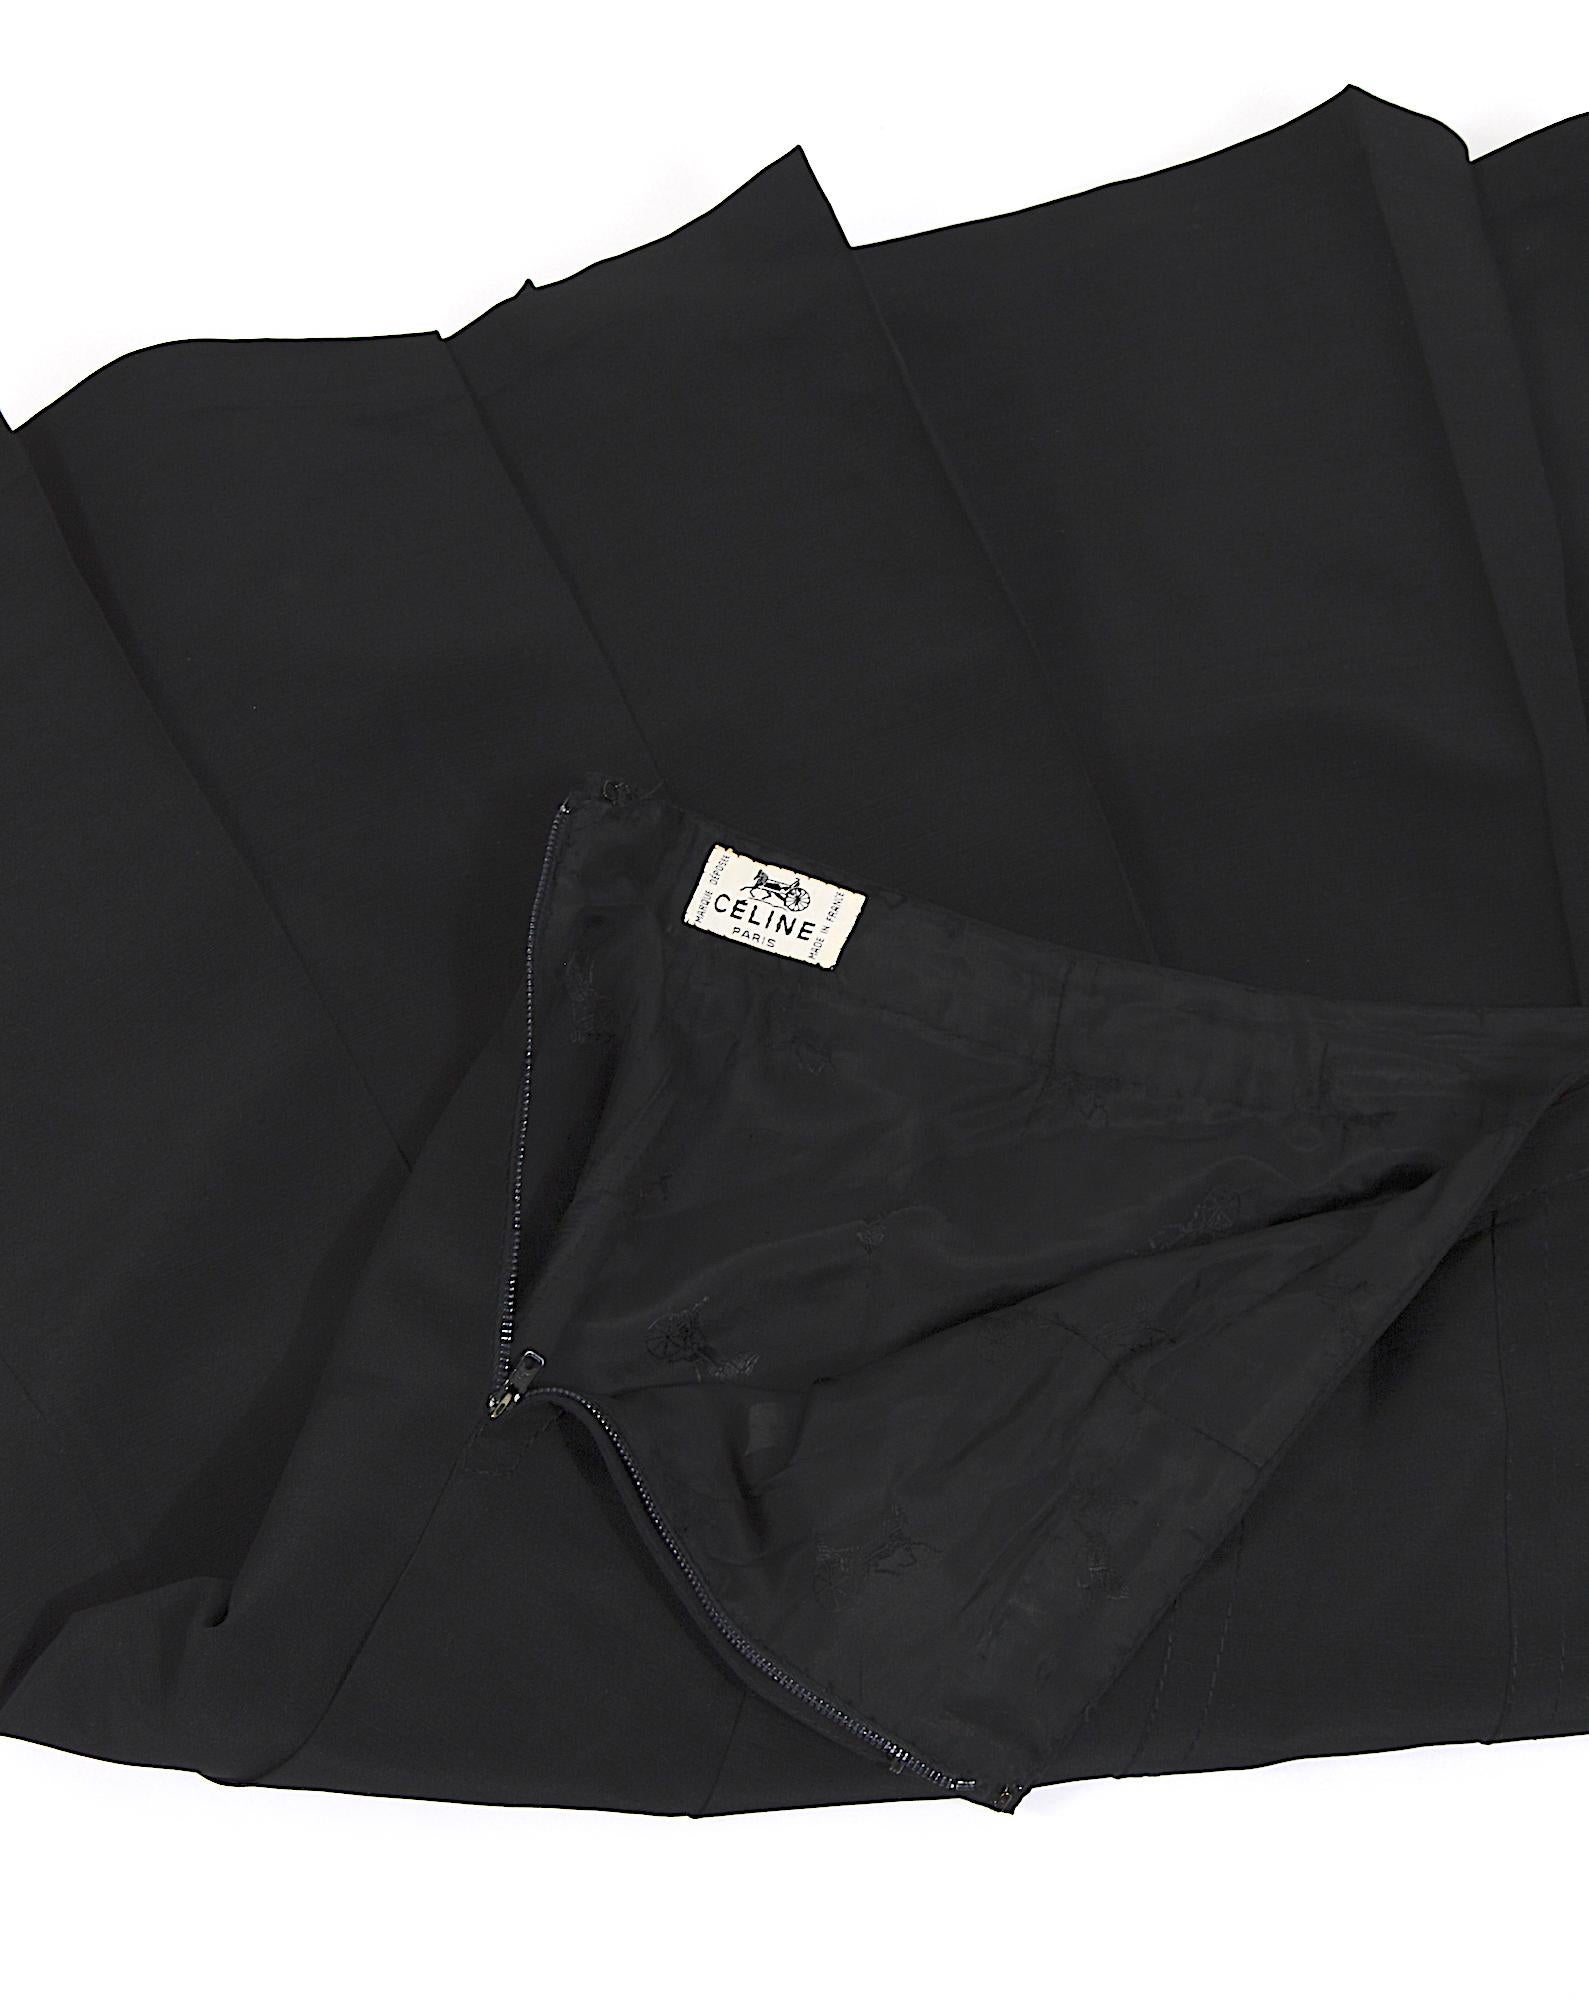 Women's Céline Paris vintage 1980s black pleated skirt.  For Sale